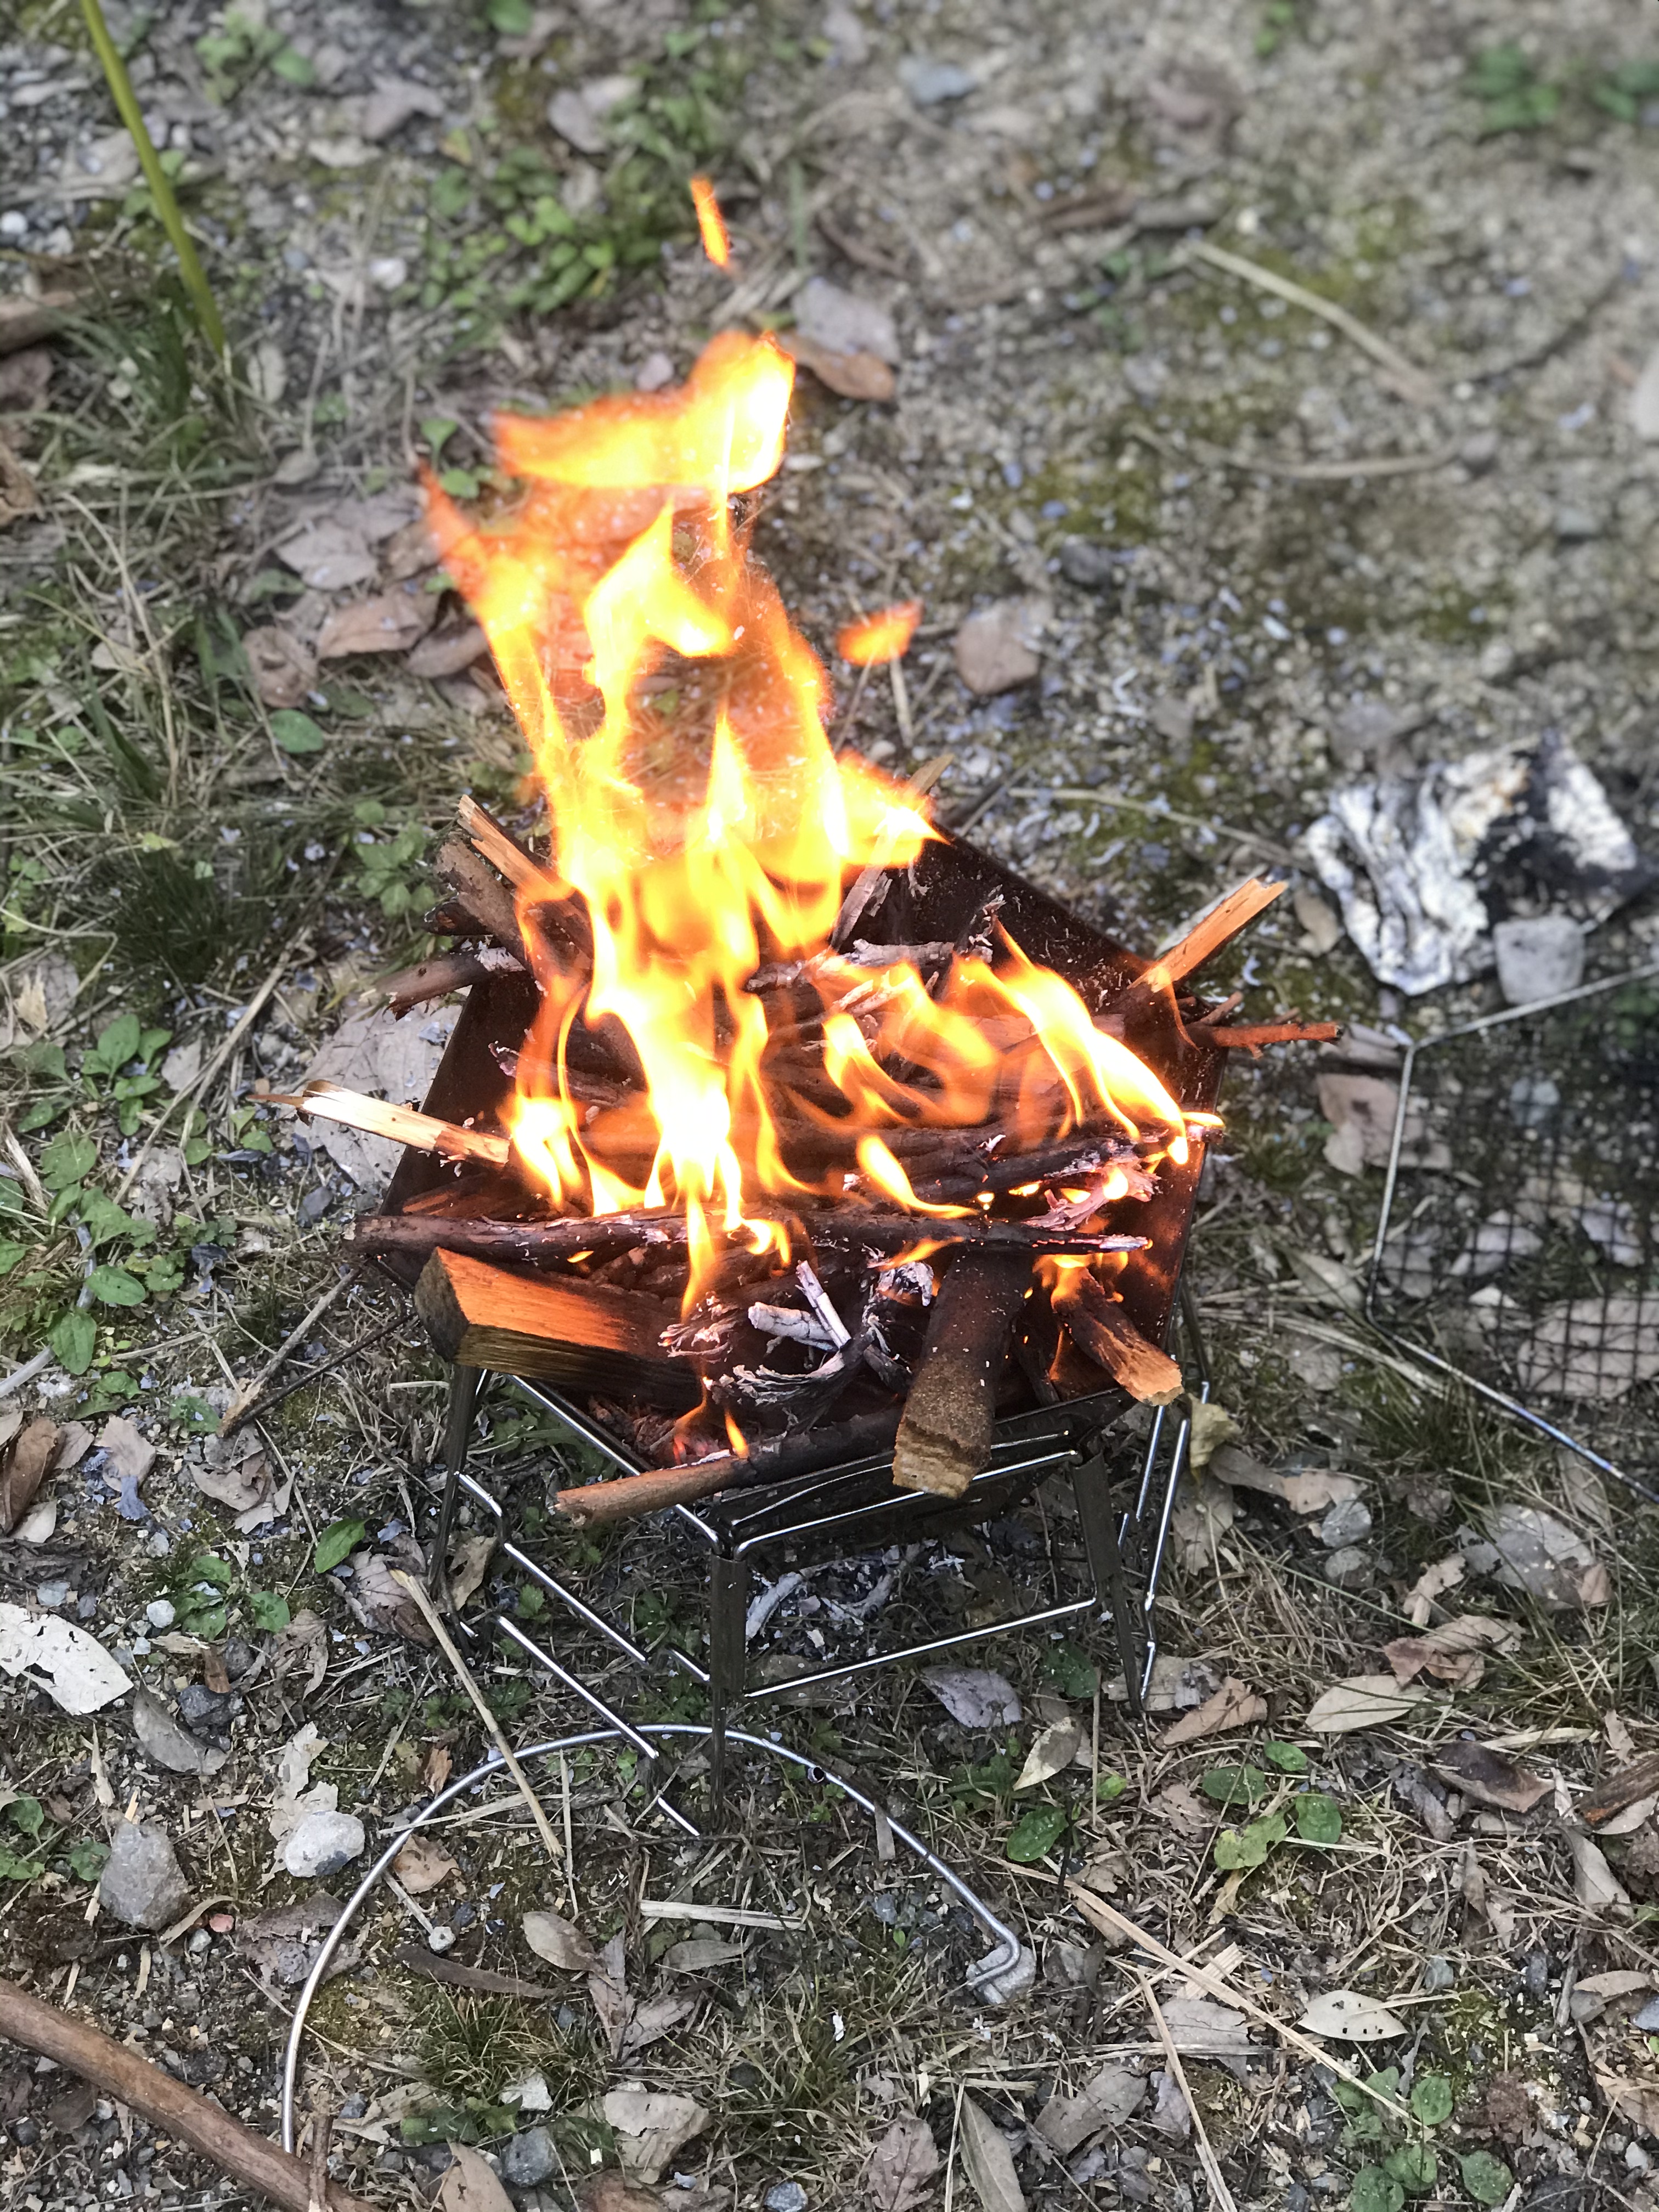 皆様、焚き火が楽しい季節になりましたが、いかがお過ごしでしょうか？